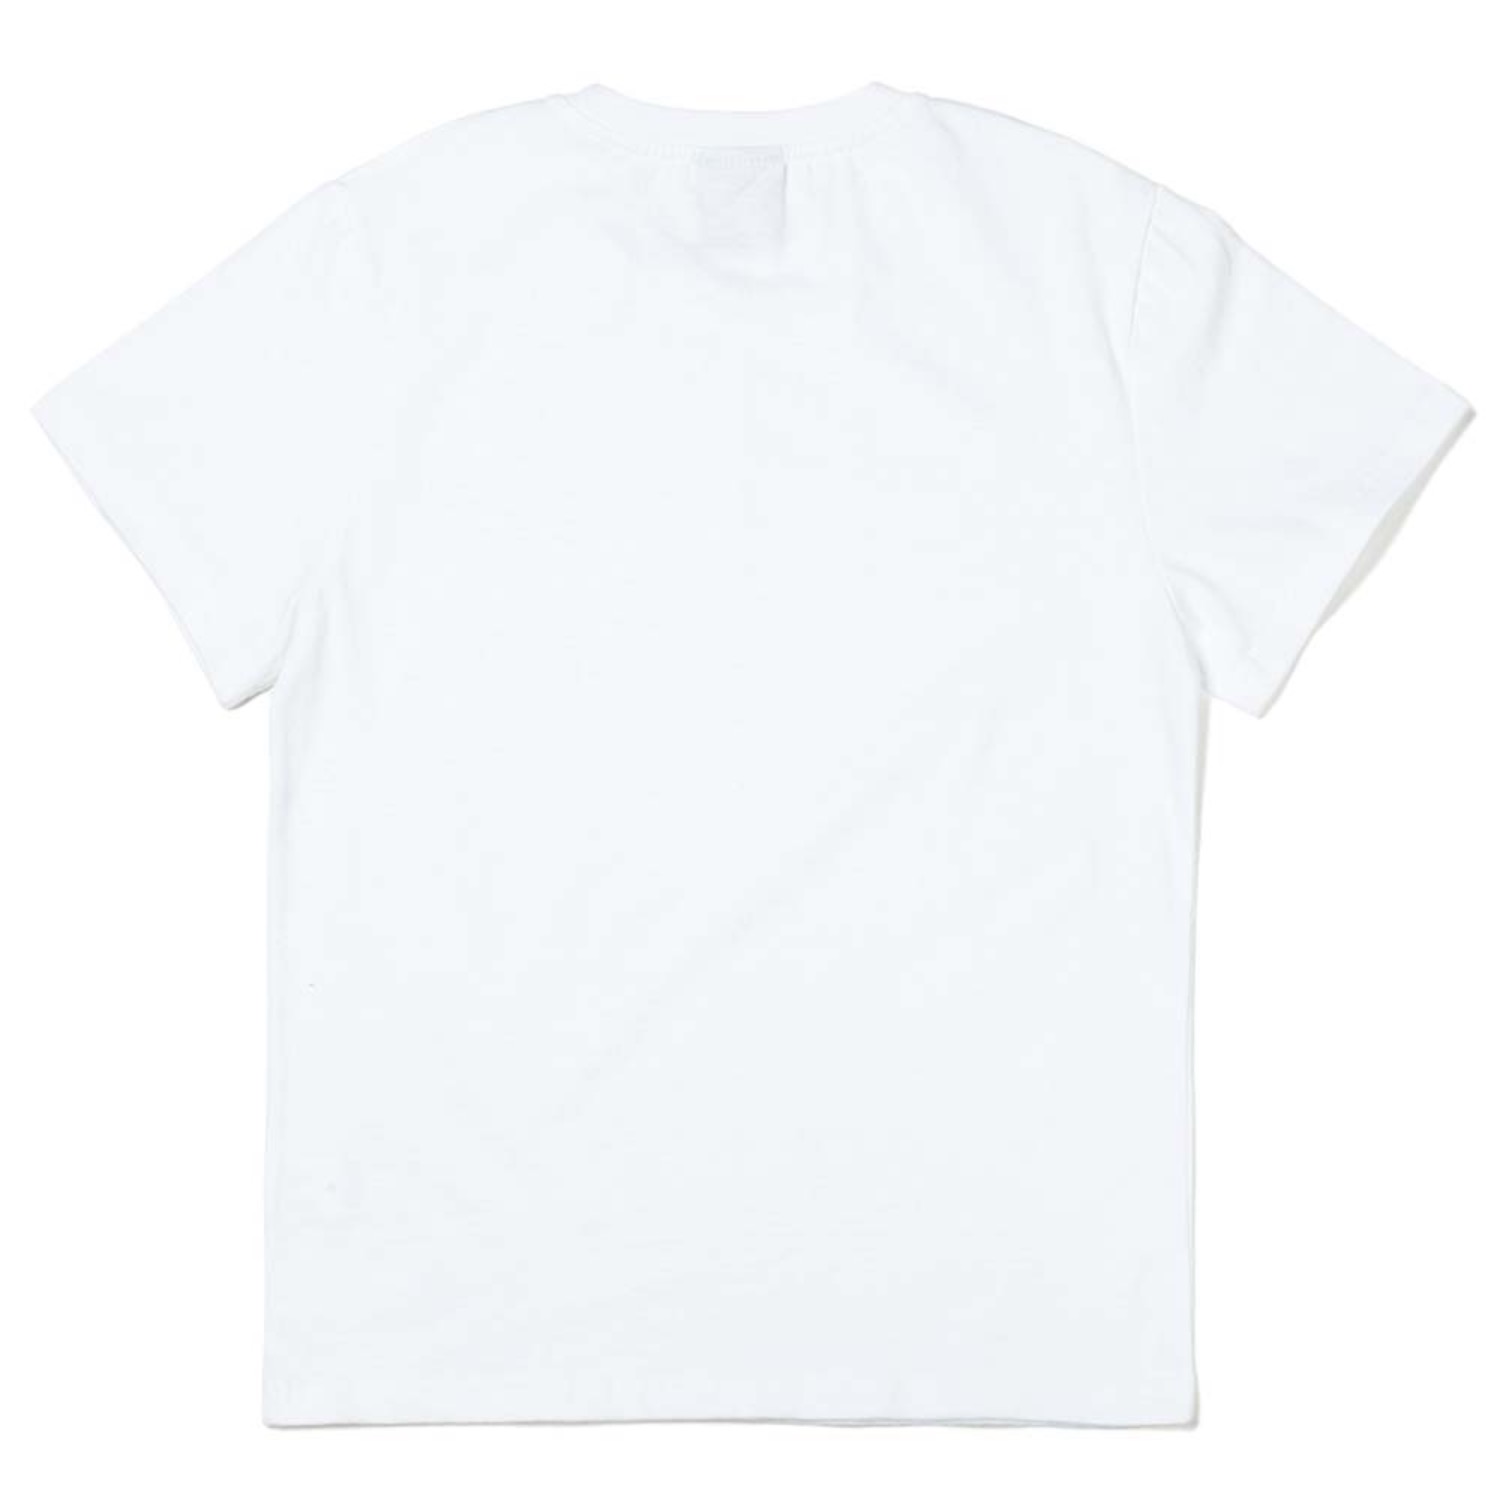 놀고먹고자고 반팔티 Play, Eat and Sleep short sleeve T-shirts (White)